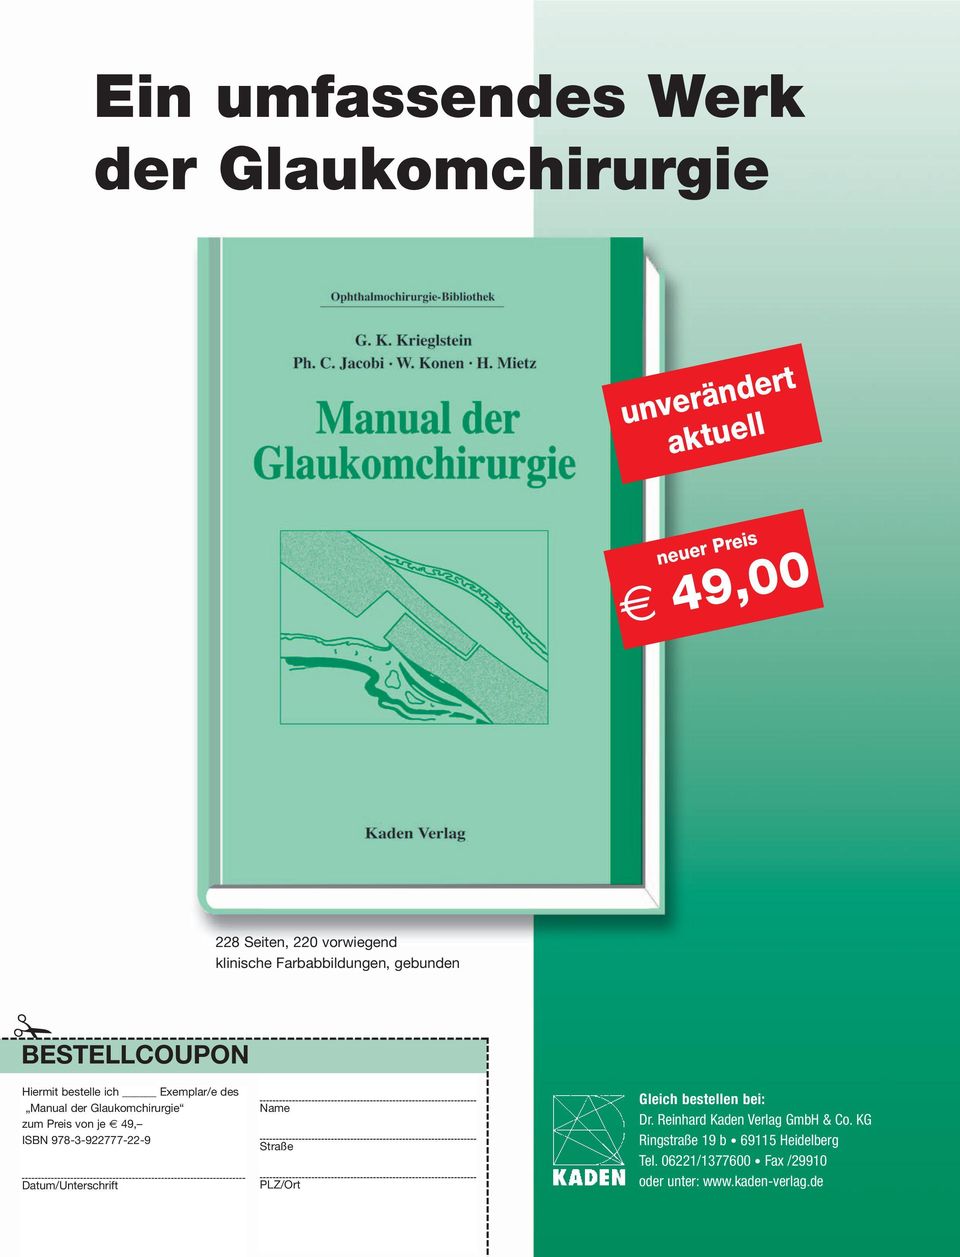 zum Preis von je 49, ISBN 978-3-922777-22-9 Datum/Unterschrift Name Straße PLZ/Ort Gleich bestellen bei: Dr.